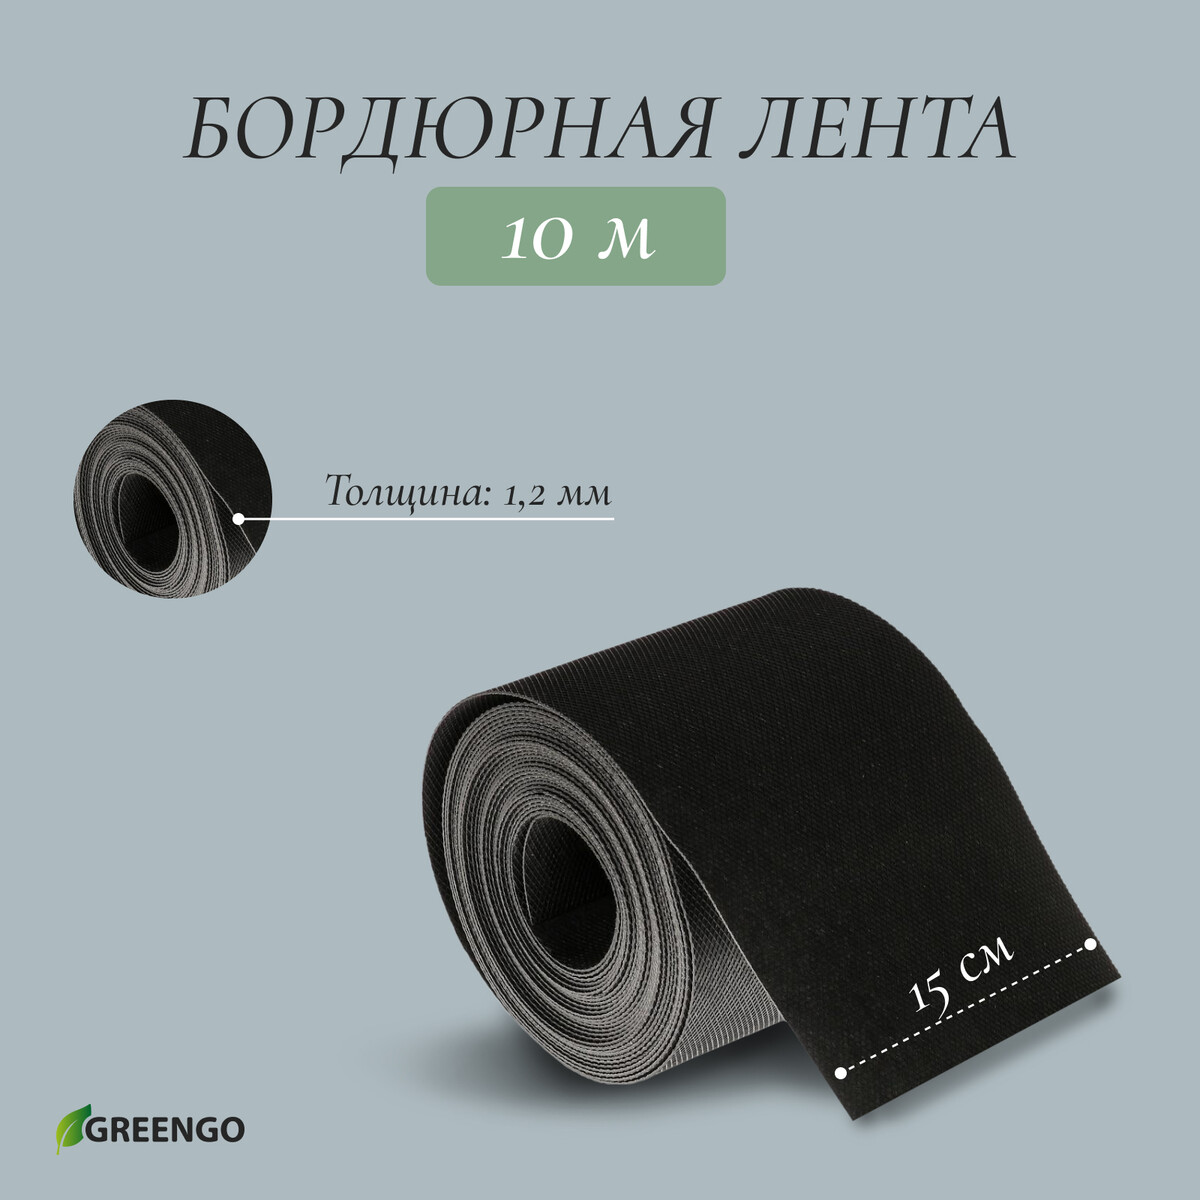 Лента бордюрная, 0.15 × 10 м, толщина 1.2 мм, пластиковая, черная, greengo кассета для рассады greengo на 4 ячейки по 180 мл пластиковая черная 18 × 13 × 6 см